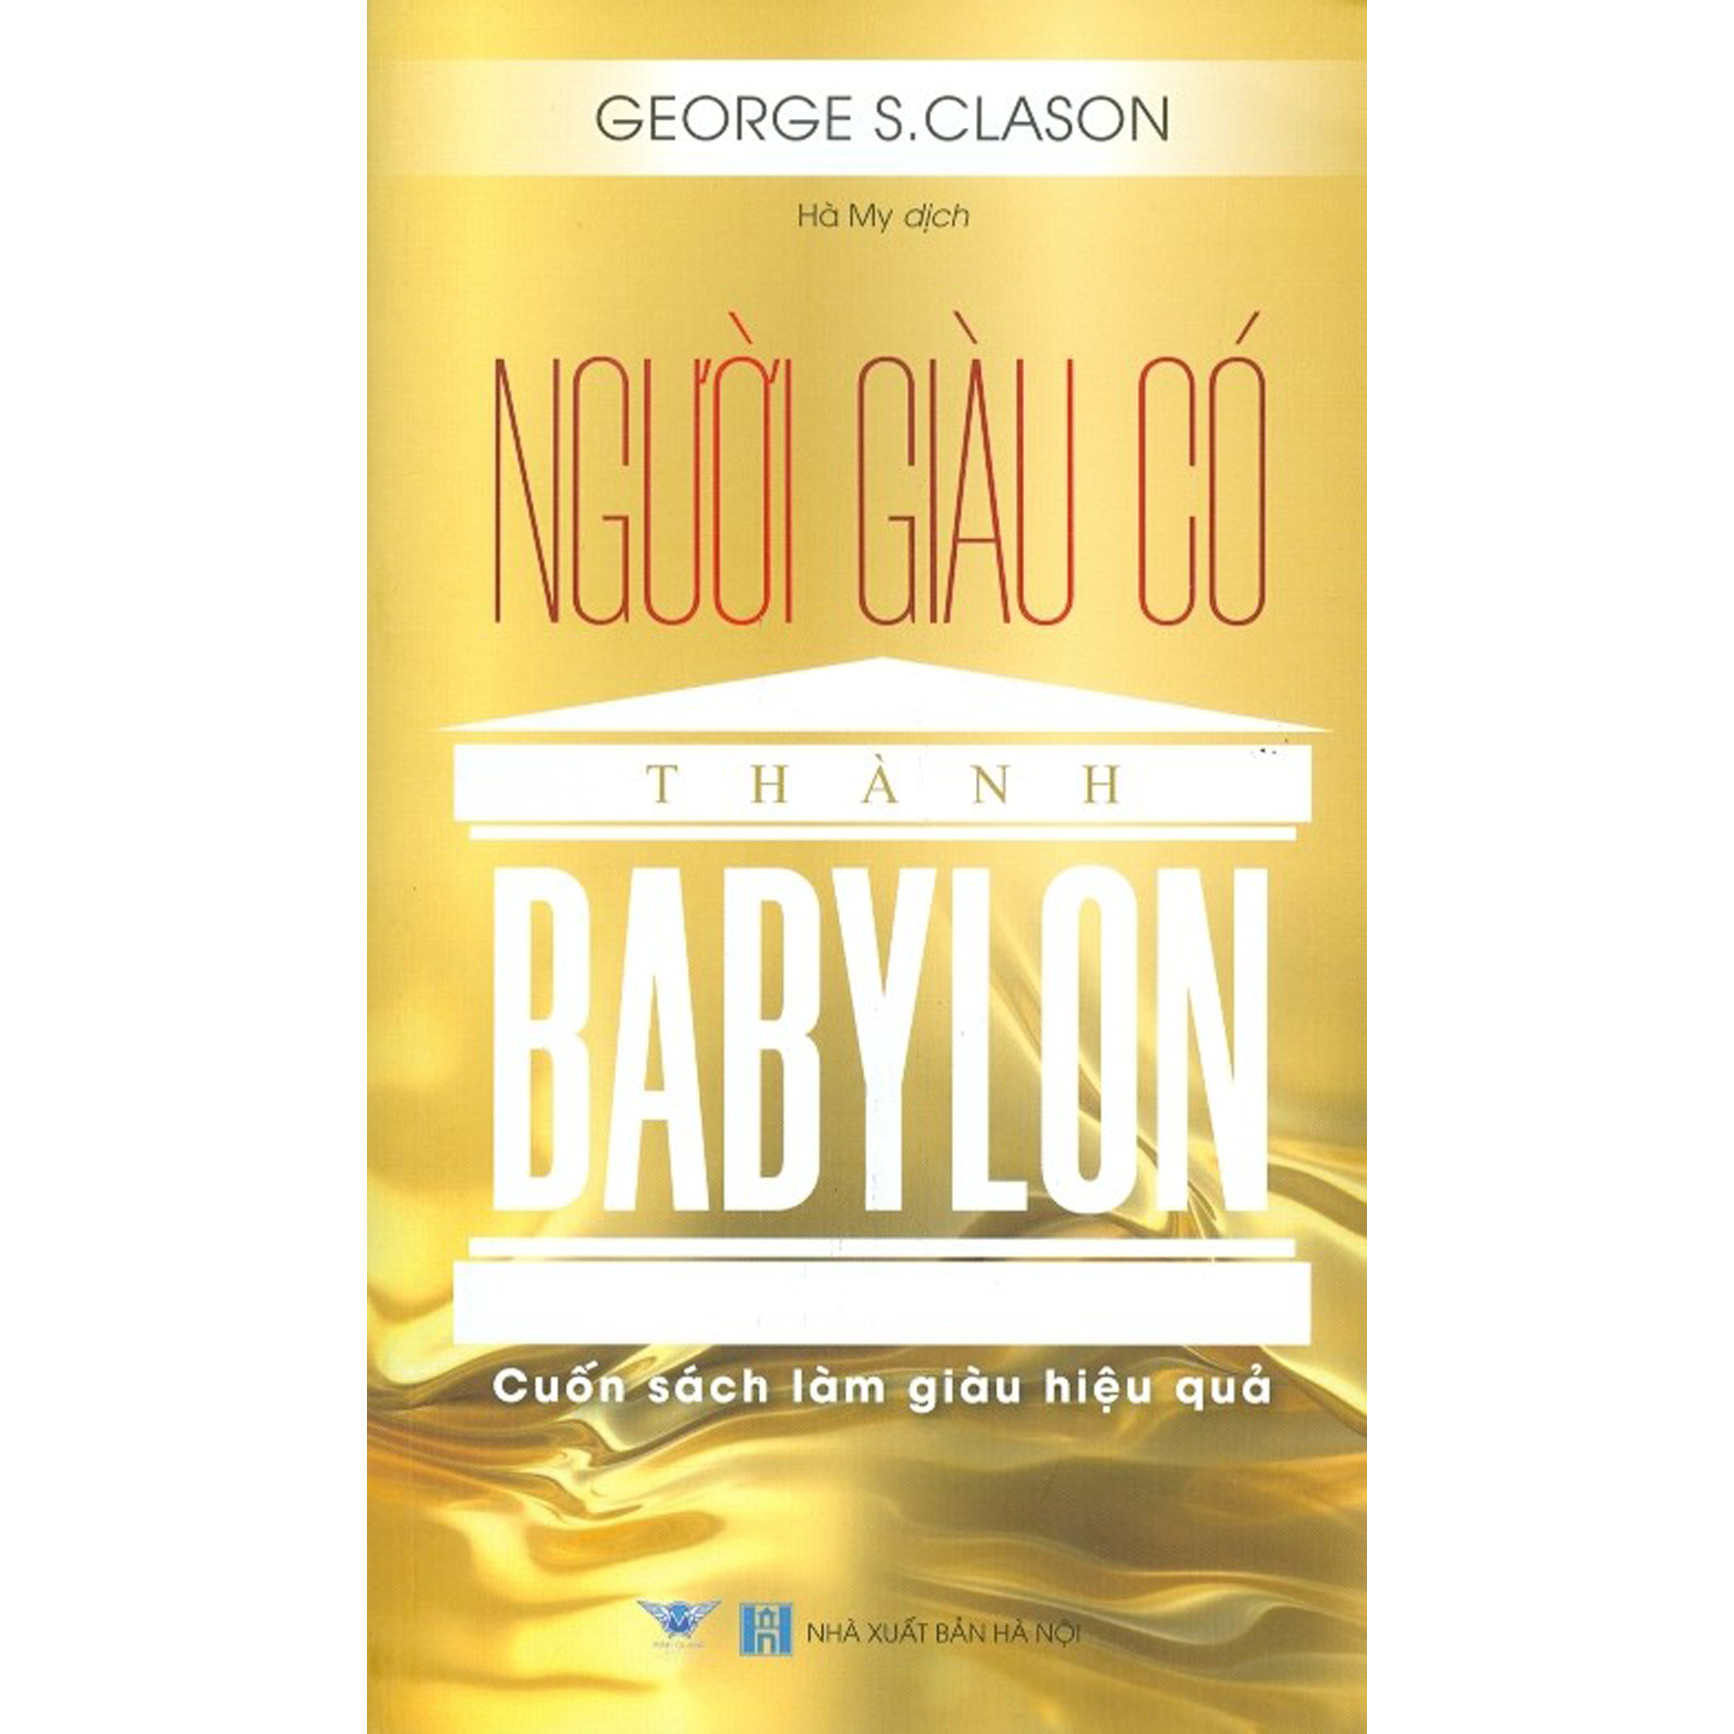 Người Giàu Có Thành Babylon - Cuốn Sách Làm Giàu Hiệu Quả